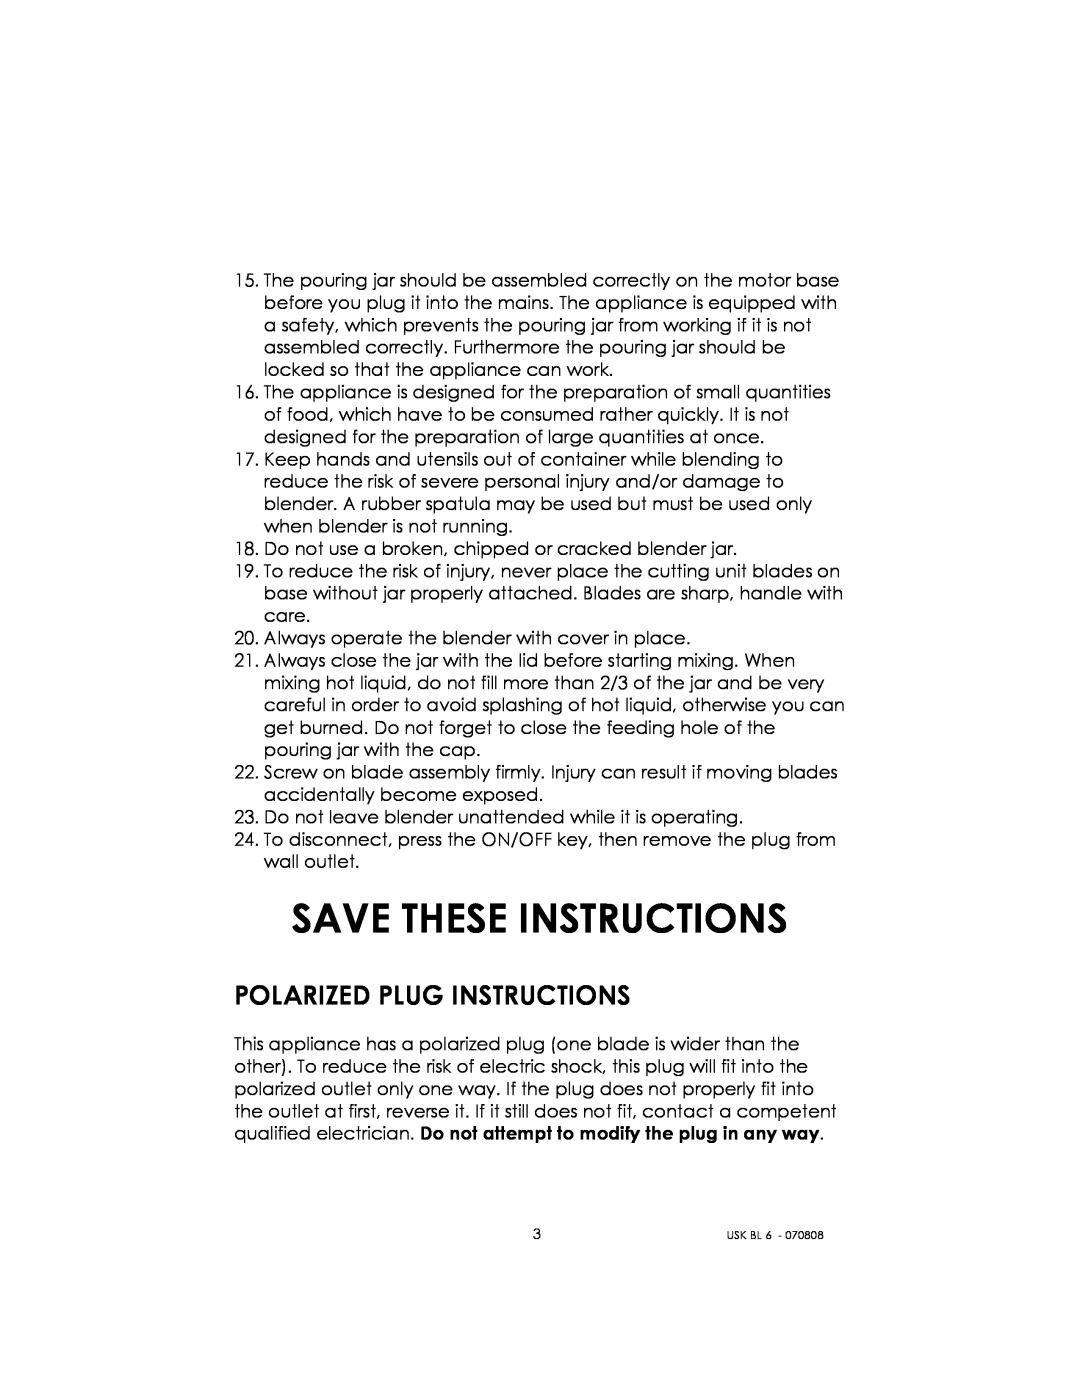 Kalorik USK BL 6 manual Save These Instructions, Polarized Plug Instructions 